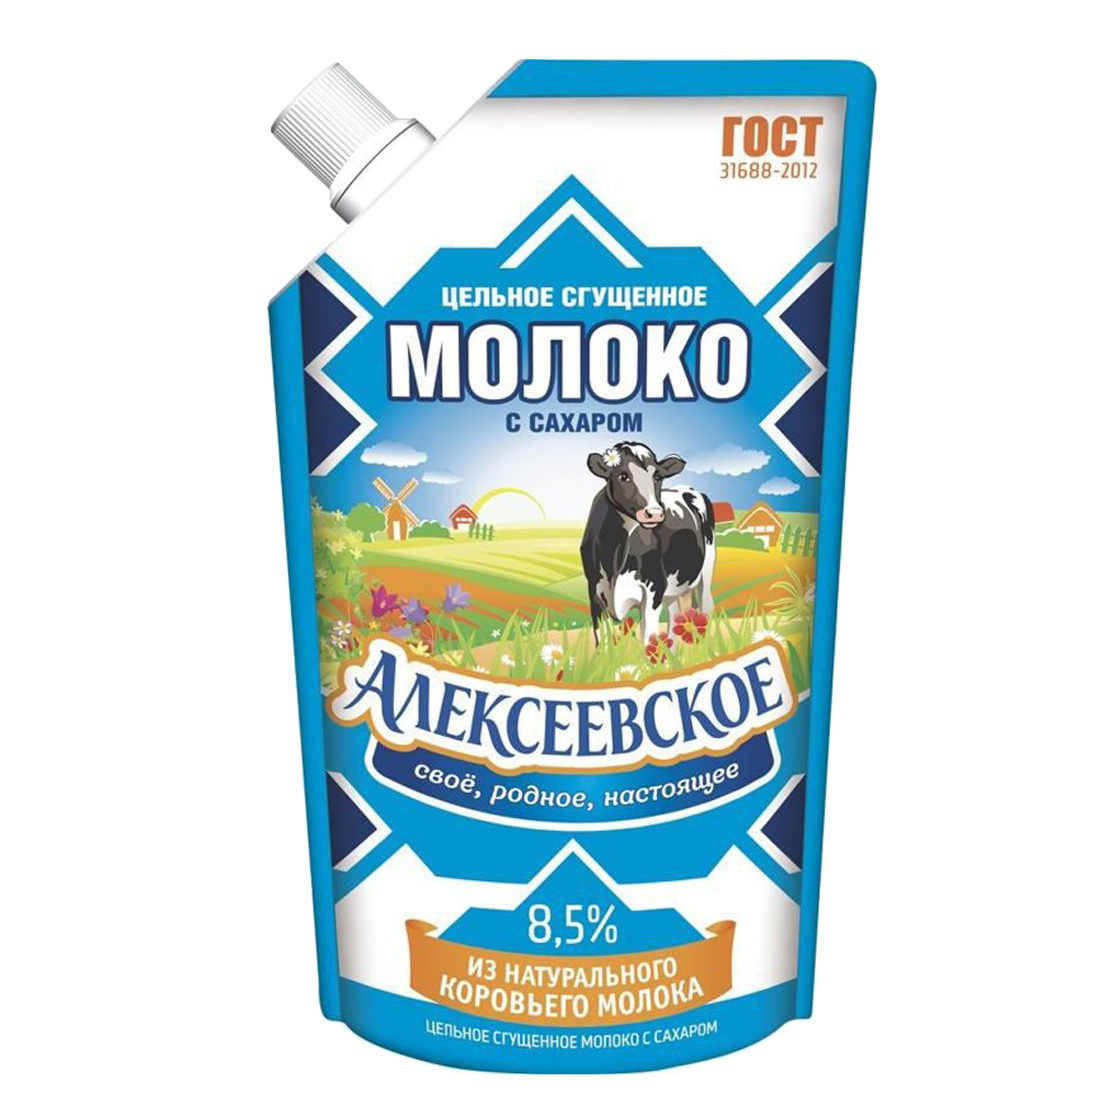 Молоко сгущенное Алексеевское 8,5% 270 г молоко алексеевское вареное сгущенное с сахаром 8 5% 360 г